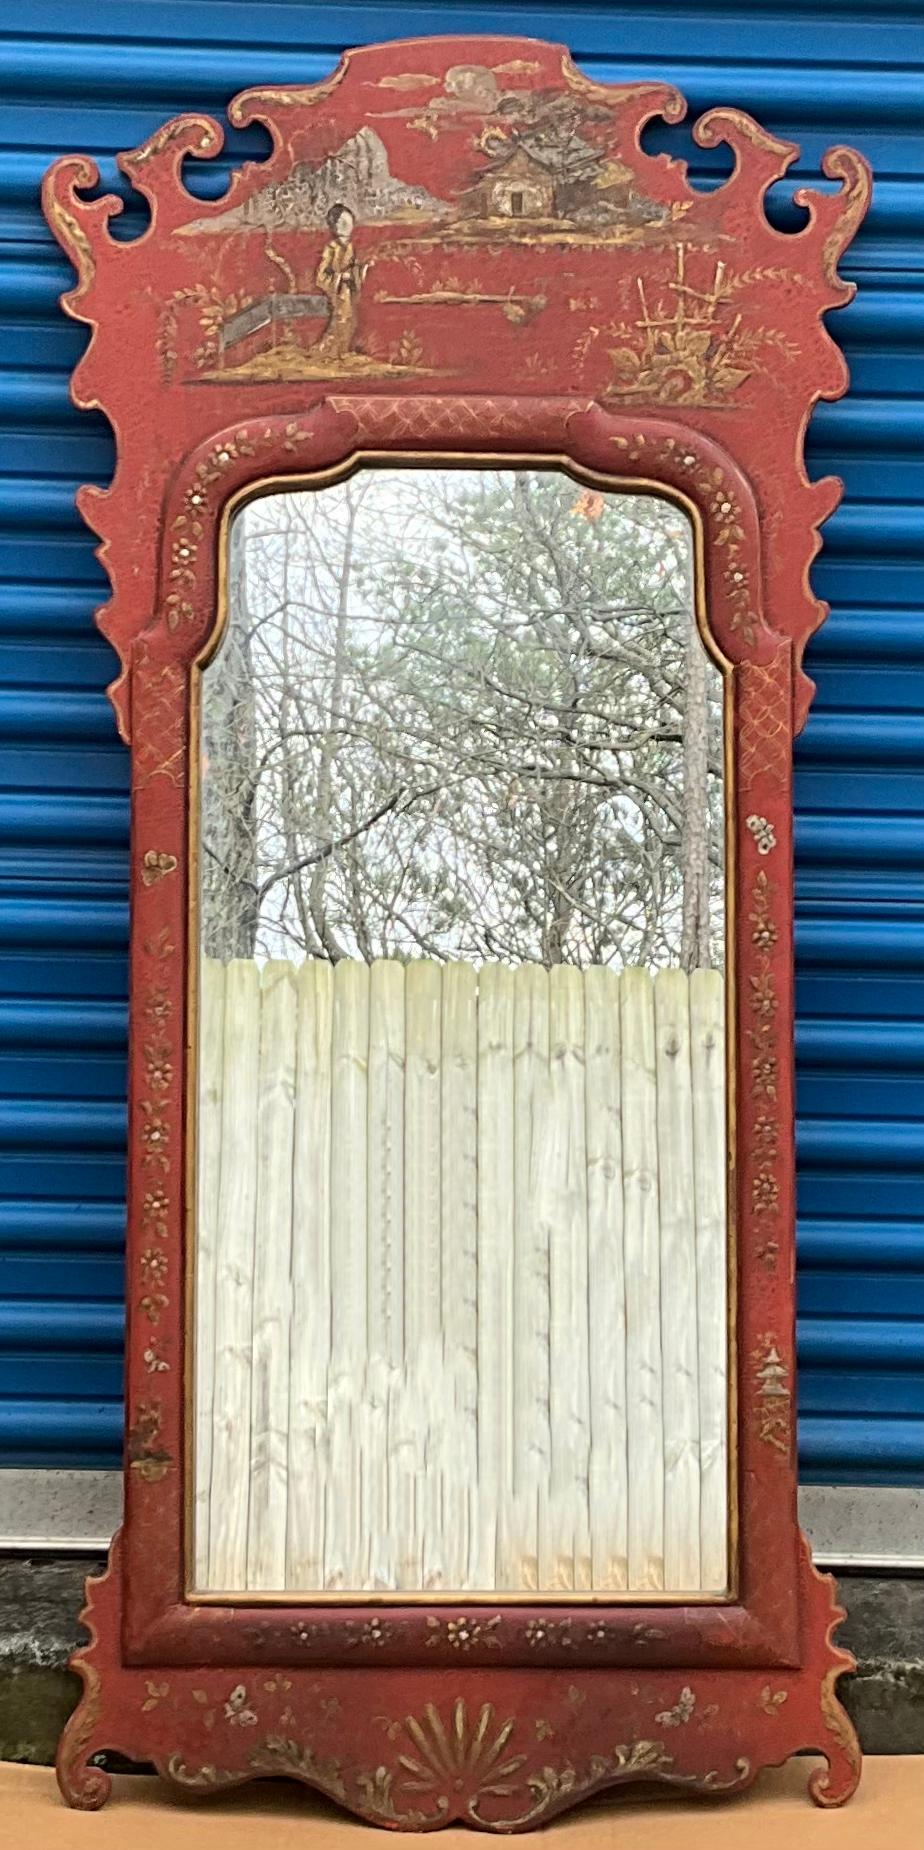 Il s'agit d'un beau miroir de chinoiserie peint à la main avec un style géorgien. Il représente des scènes pastorales peintes à la main sur un fond rouge chinois. Le cadre est en bois et non marqué. On pense qu'il est italien.